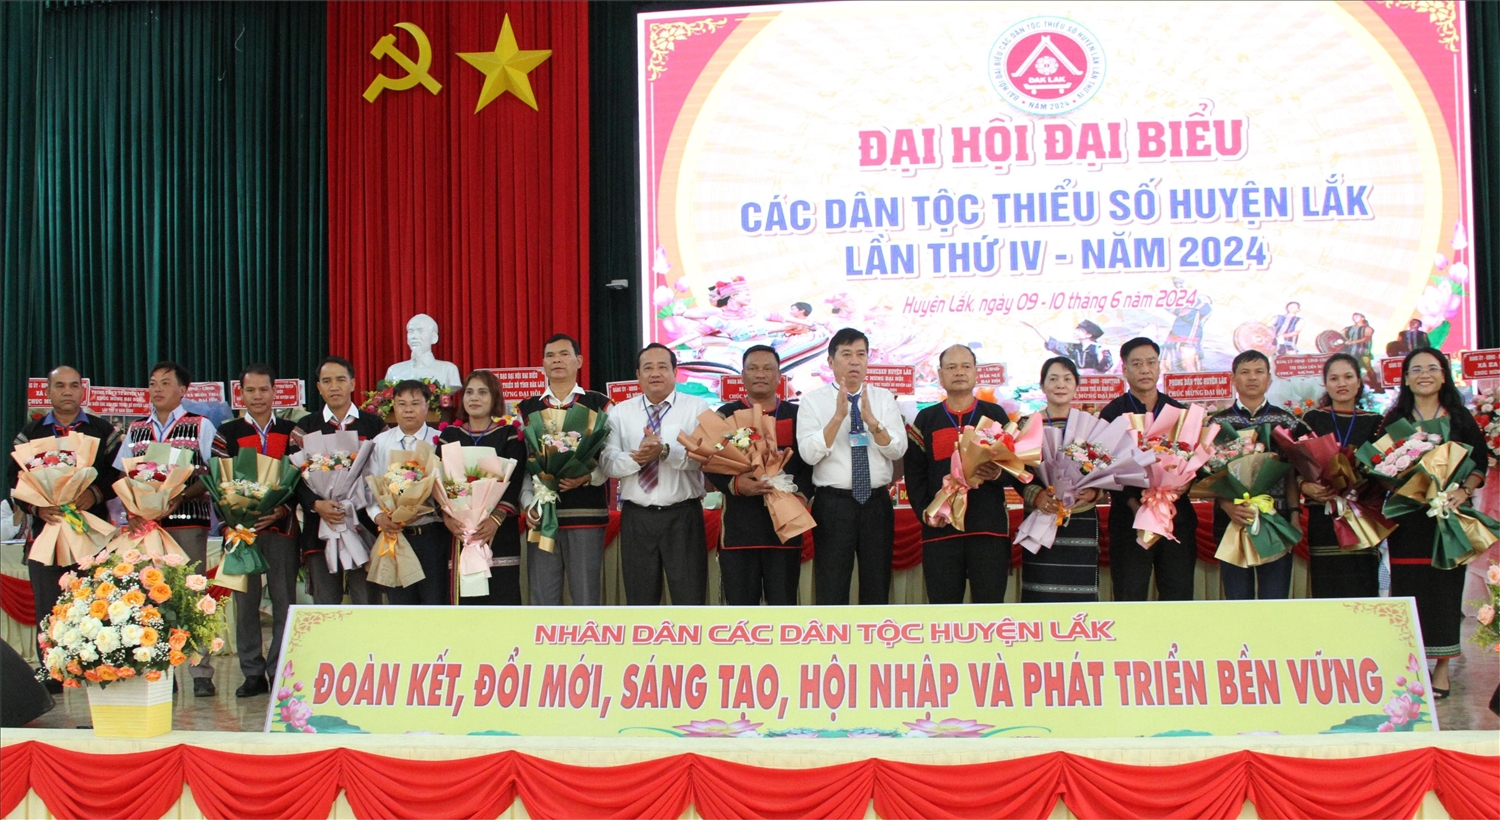 Các đại biểu được cử chọn đi dự Đại hội Đại biểu các dân tộc cấp tỉnh